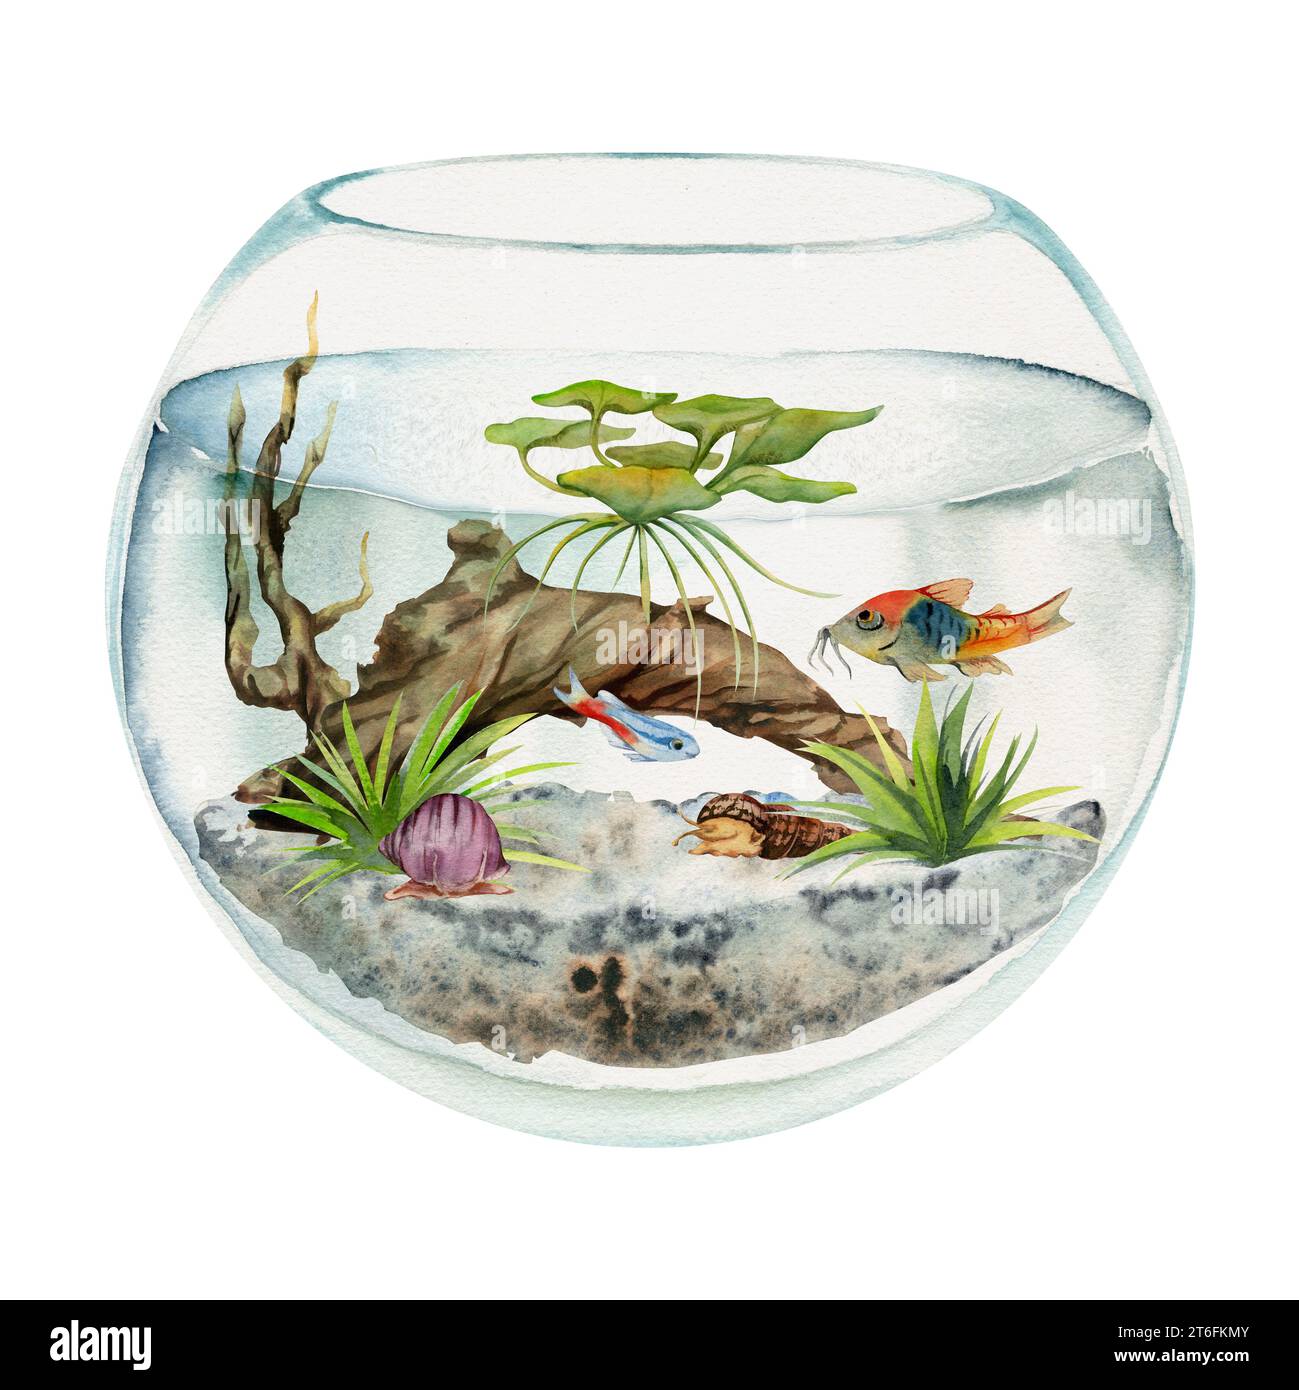 Poisson d'aquarium d'aquarelle dessiné à la main, algues, bois de tourbière dans le bol à poissons rond. Illustration marine exotique sous-marine. Isolé sur fond blanc. Conception Banque D'Images